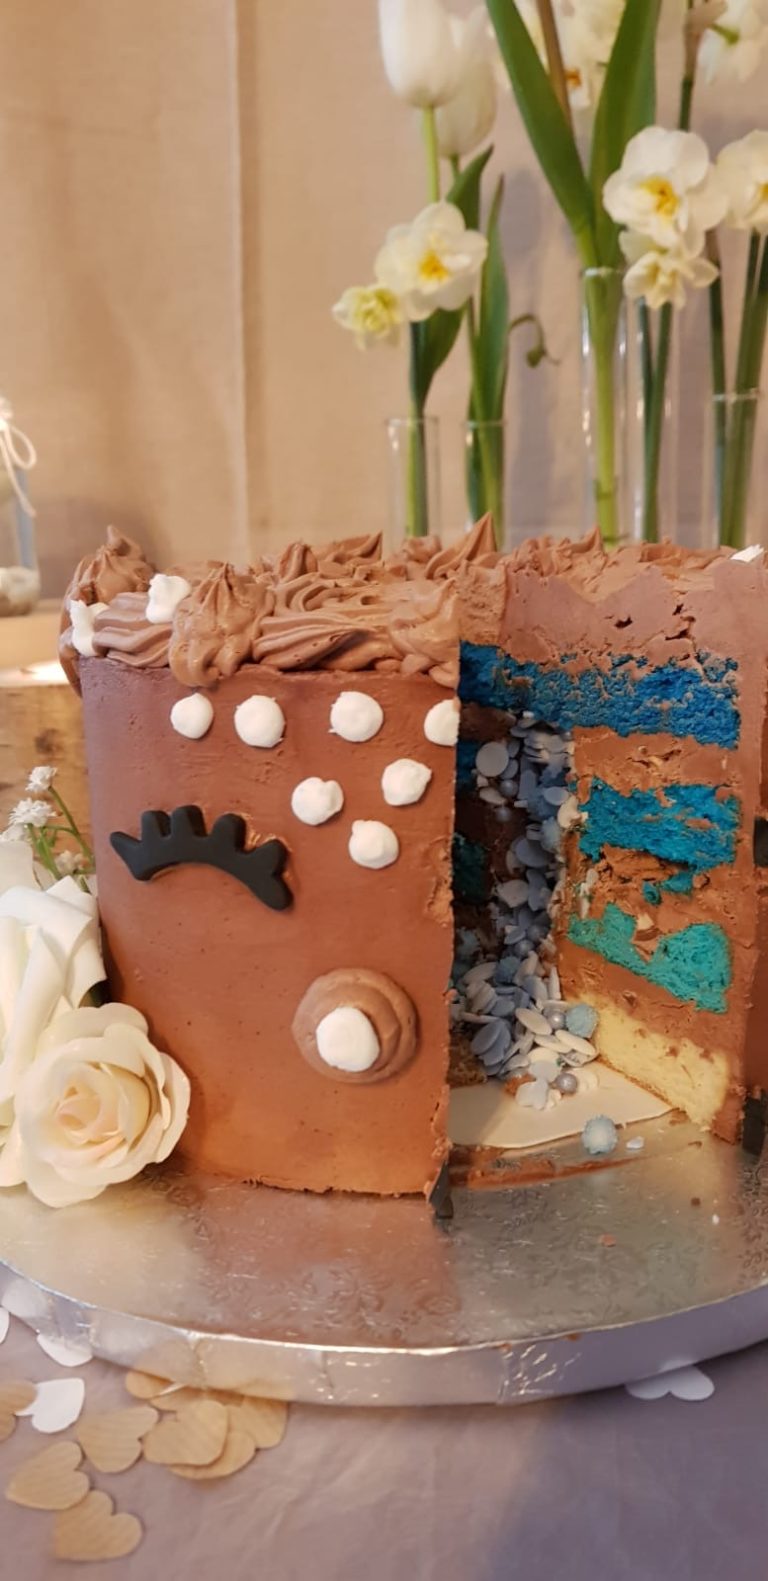 Gâteau annonce du genre (fille ou garçon)